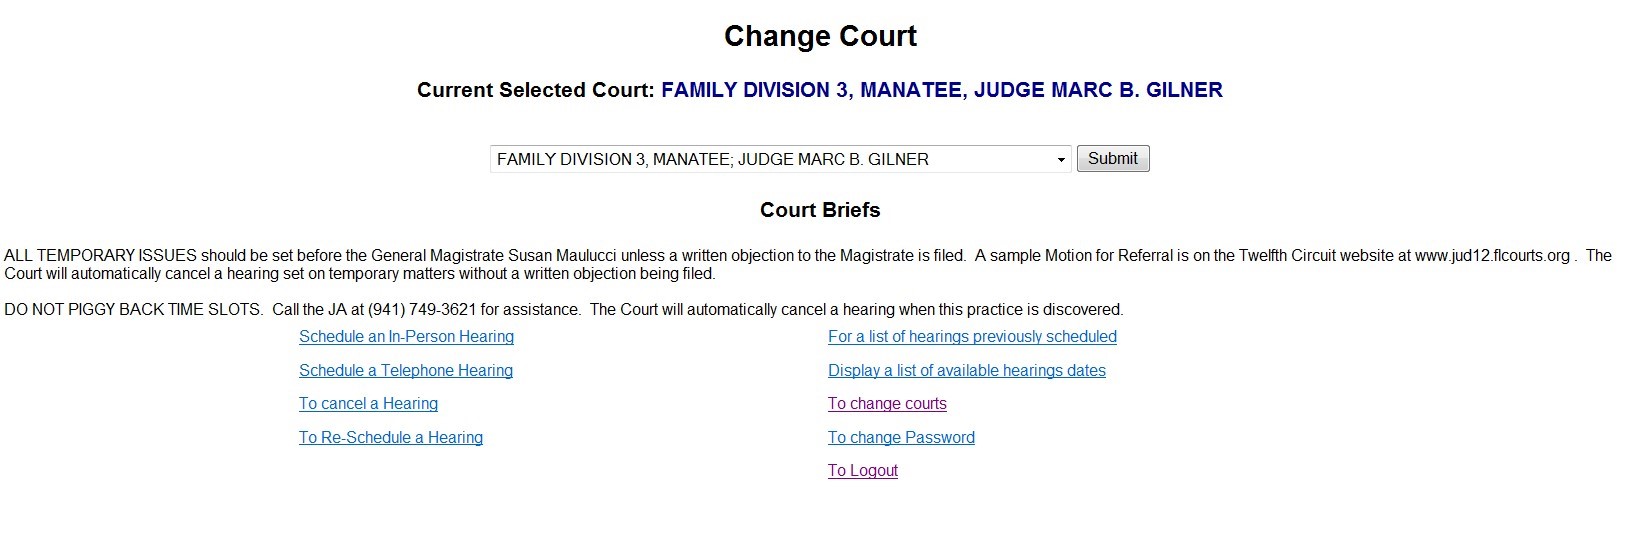 Change Court Form result